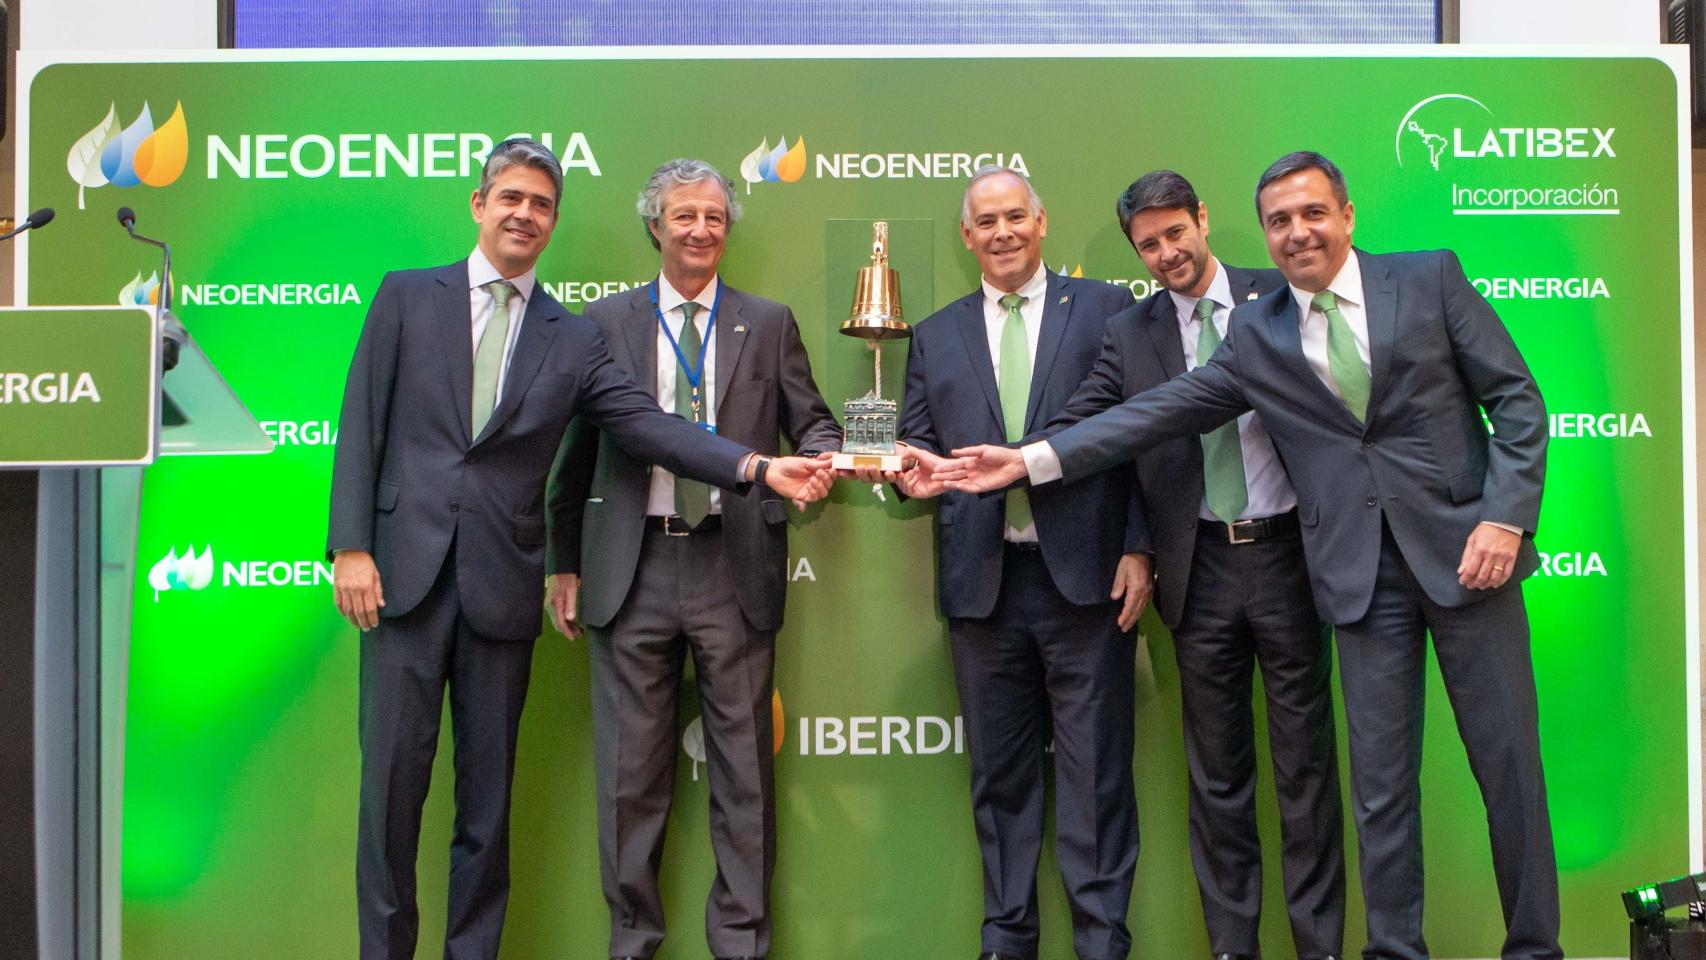 Neoenergia (Iberdrola) debuta en la bolsa española para abrirse a inversores europeos que busquen el largo plazo